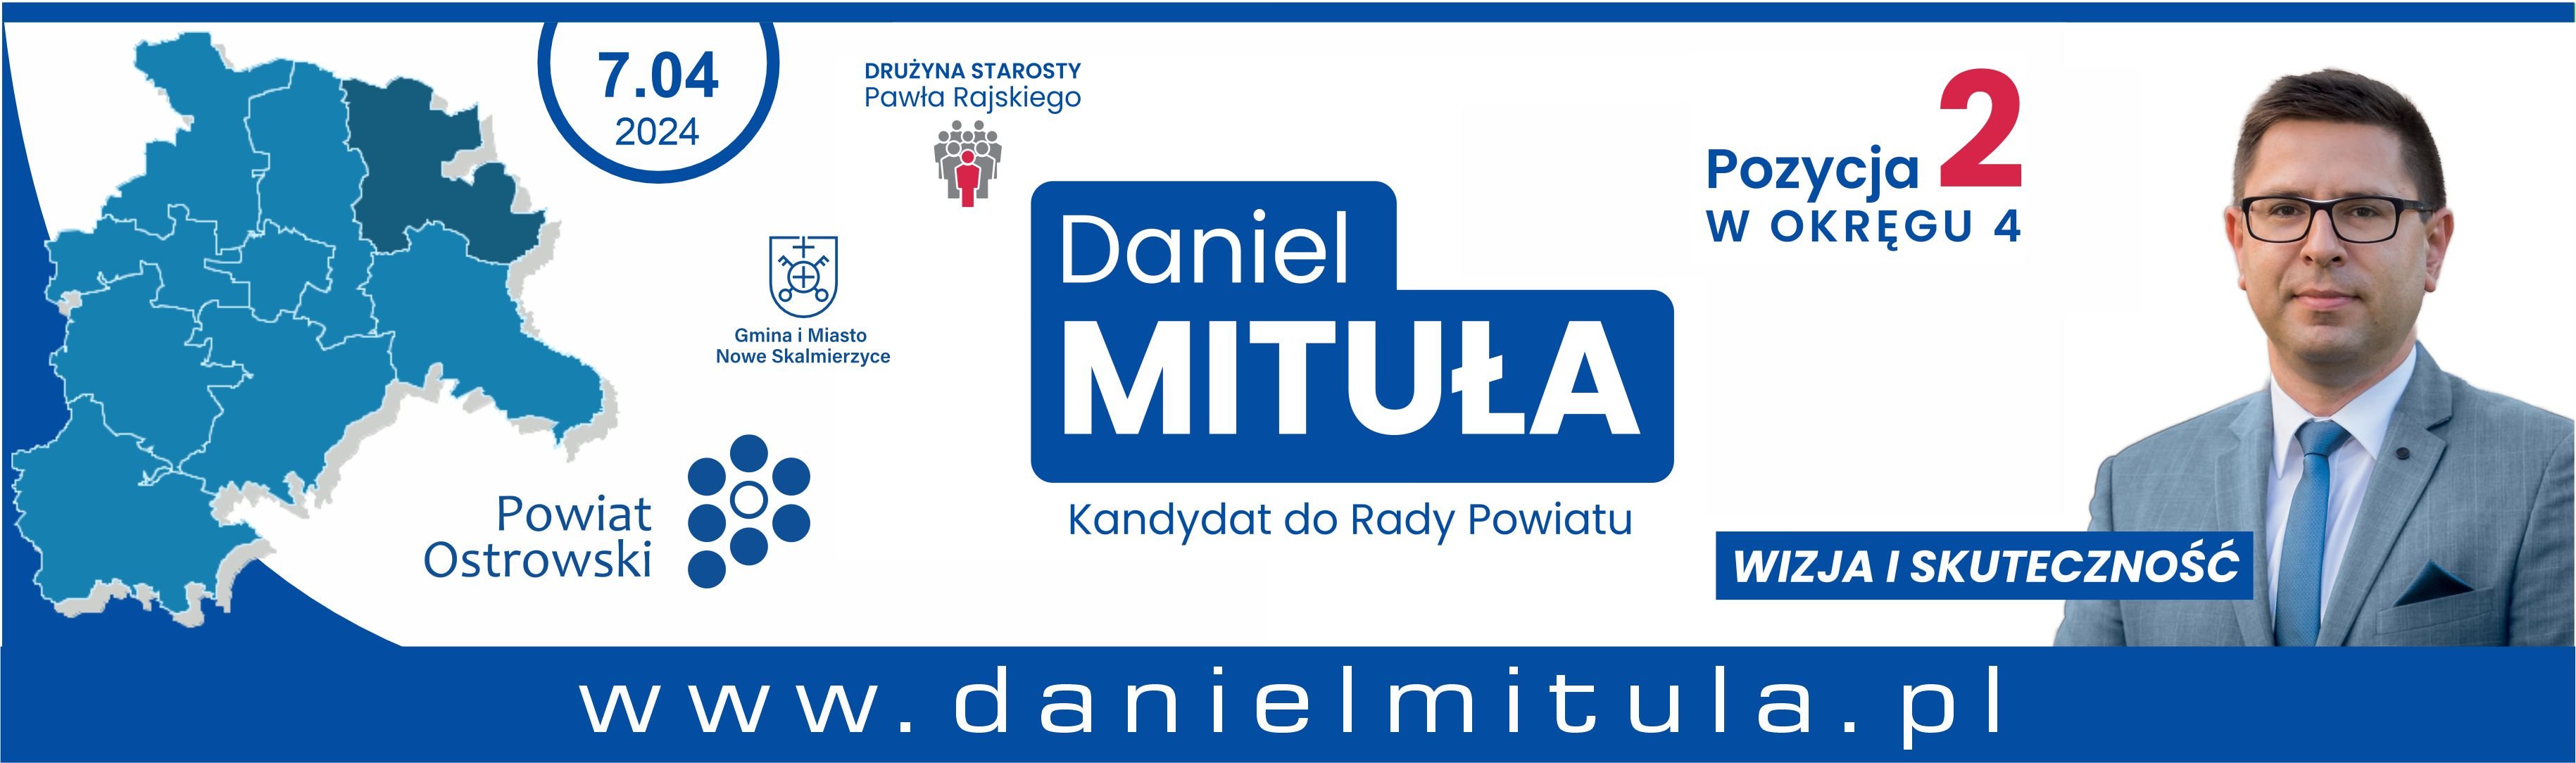 Baner Daniel Mitula